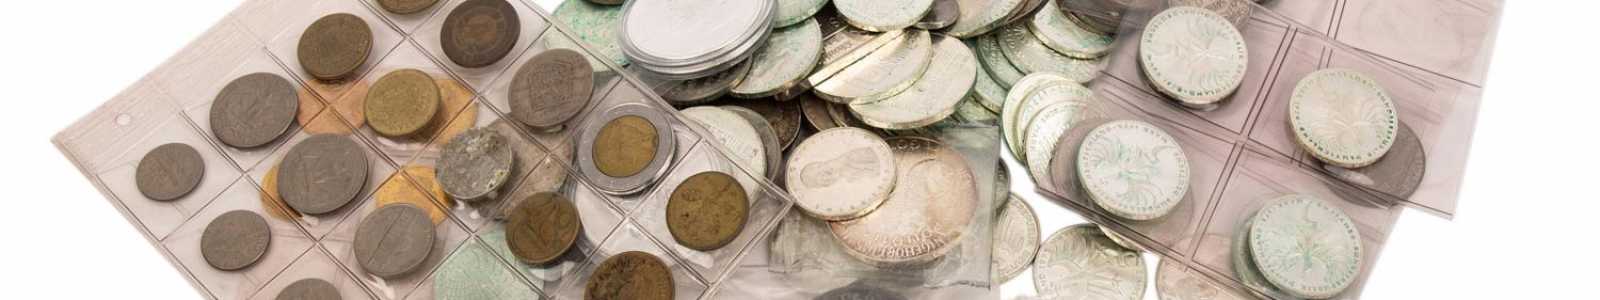 Monnaies, médailles, timbres-poste, objets historiques